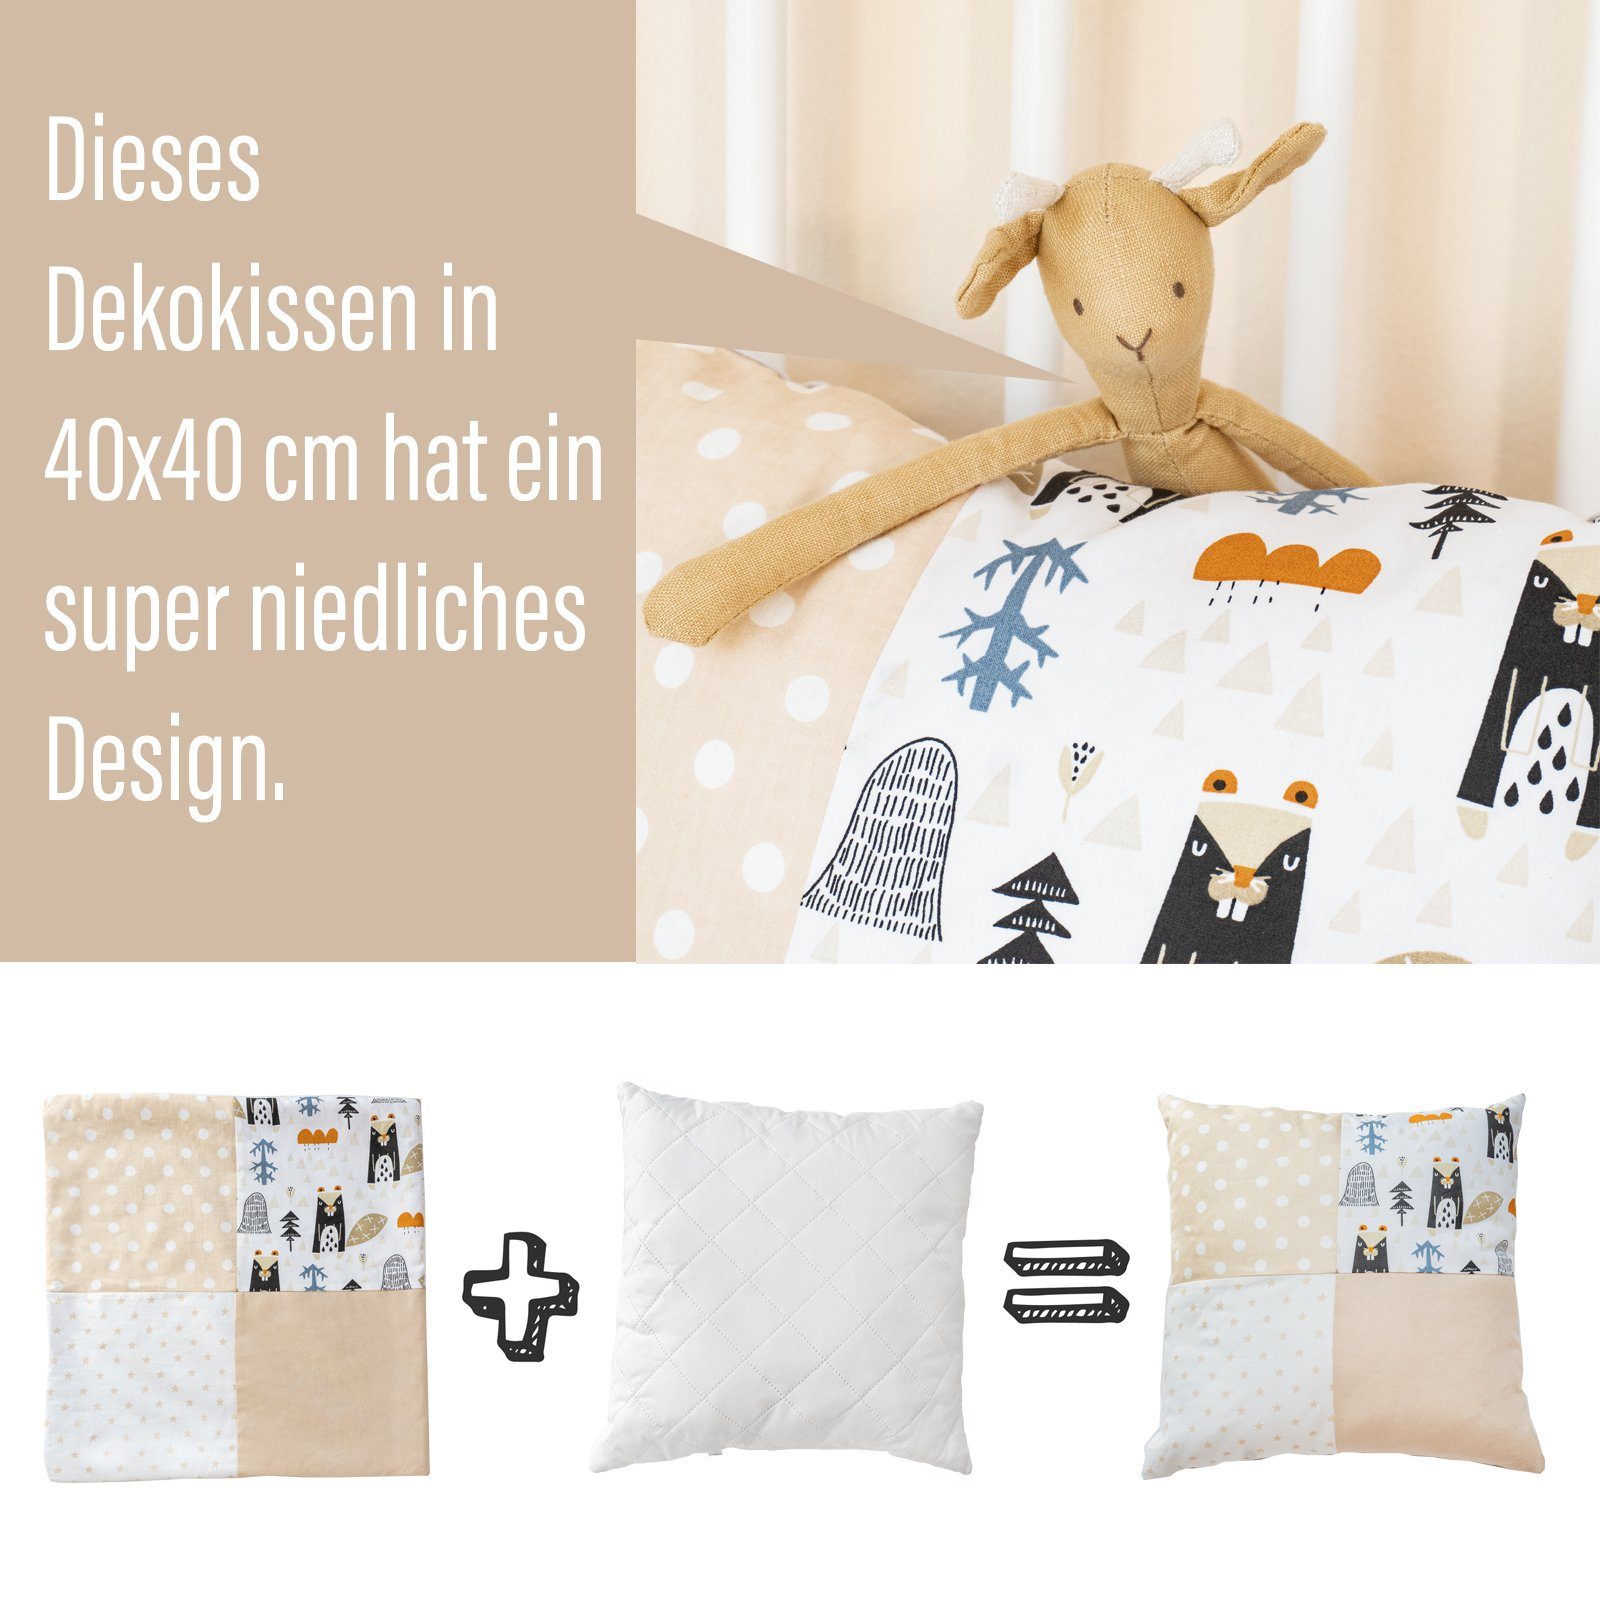 Alcube Betthimmel Kinderzimmer aus Set, & Kissen Deko Deko Wimpelkette - Weiß/Beige Babyzimmer, 40x40 Kinderbett für